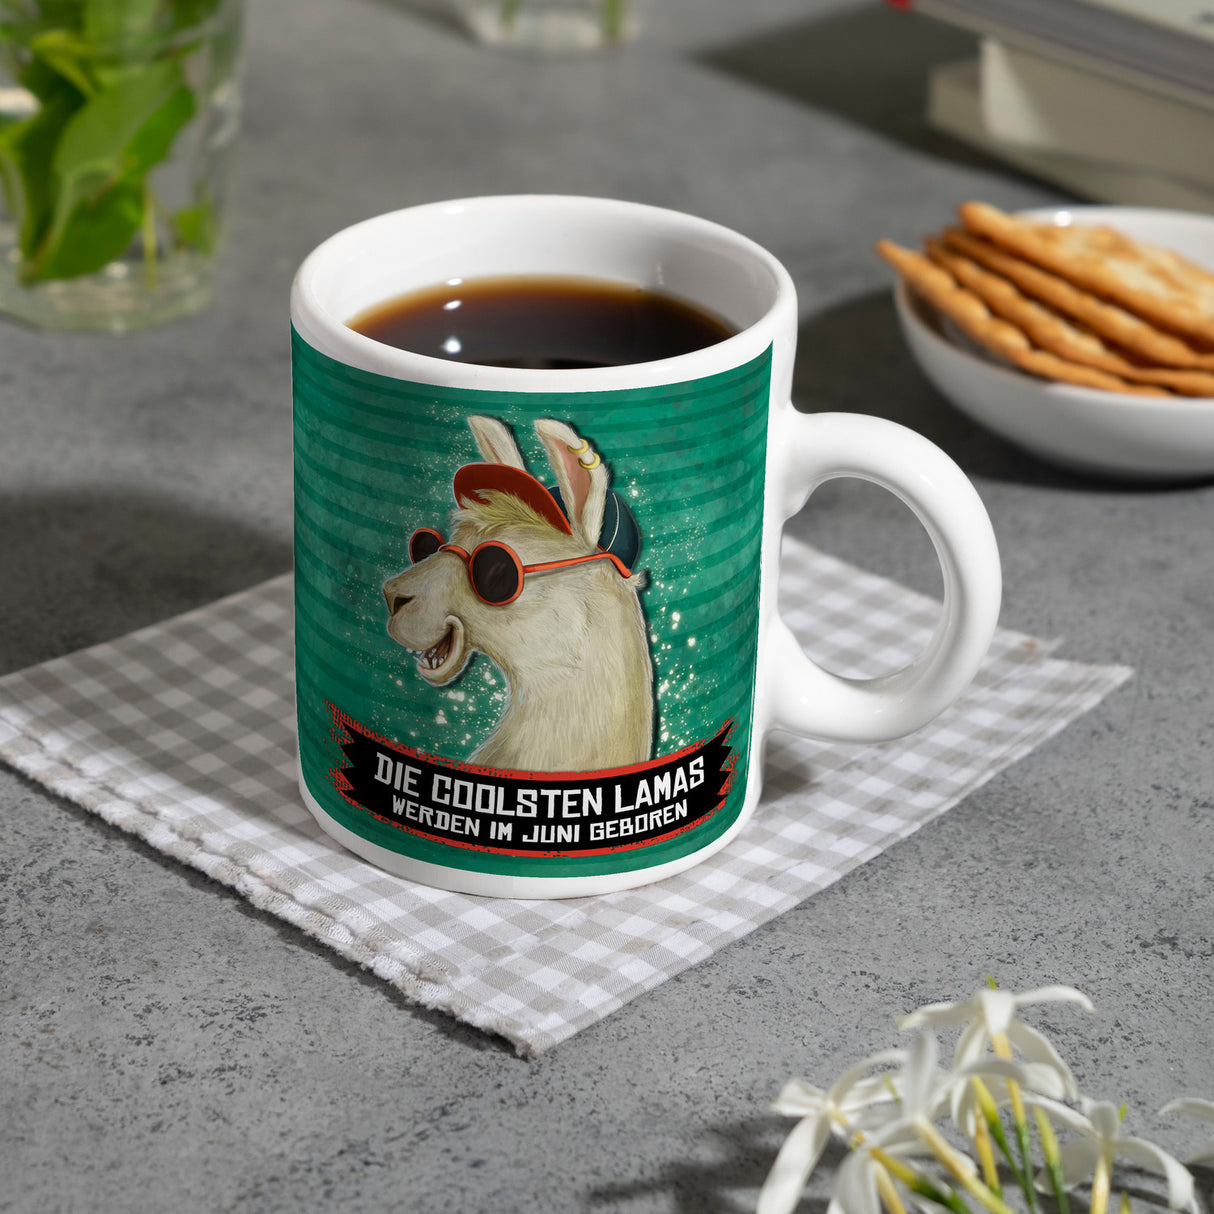 Kaffeebecher mit Spruch: Die coolsten Lamas werden im Juni geboren